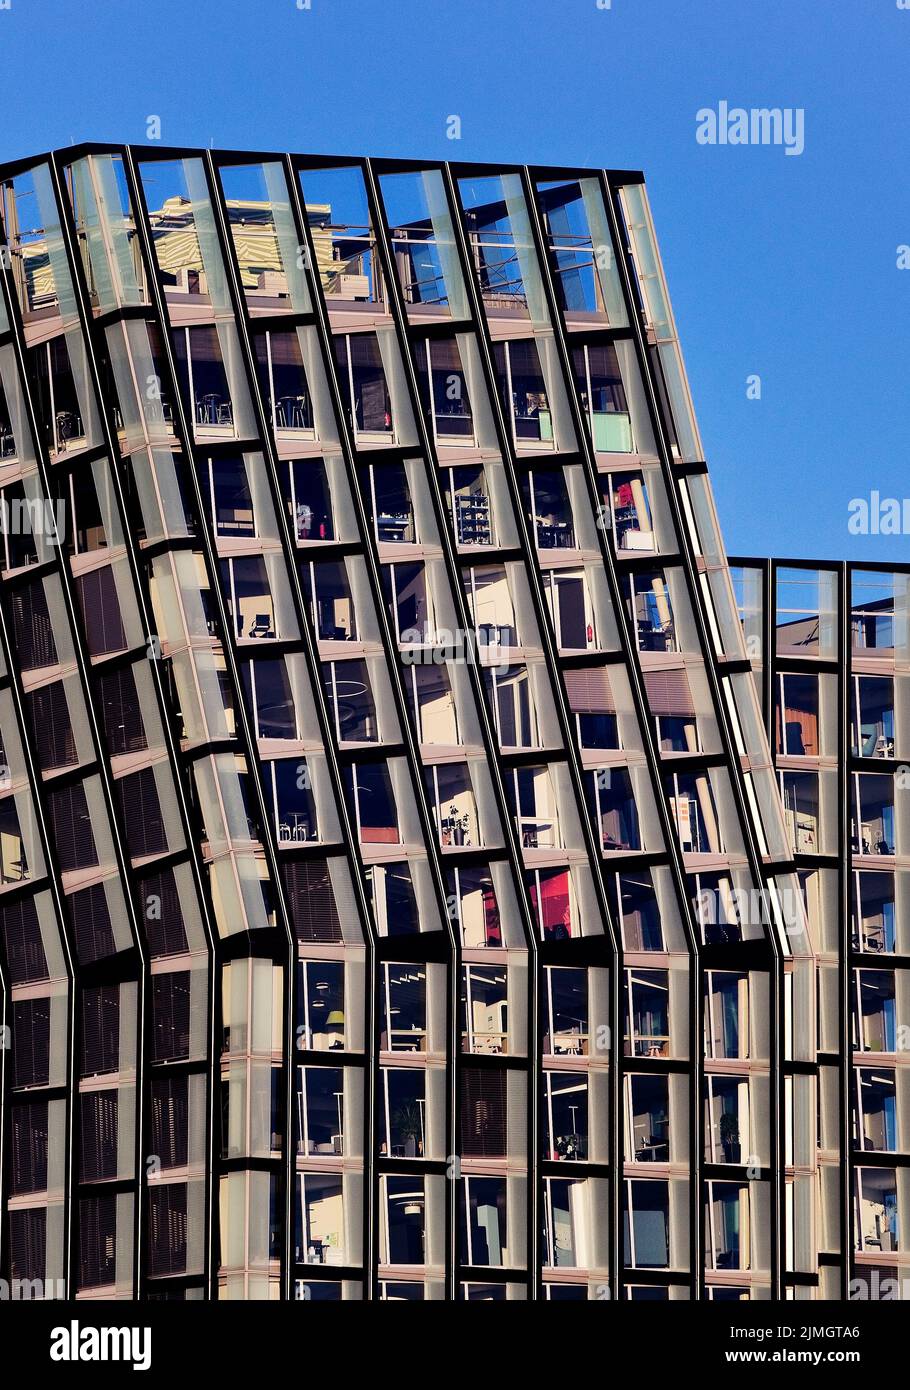 Dancing towers, Reeperbahn, St. Pauli, Hamburg, Germany, Europe Stock Photo